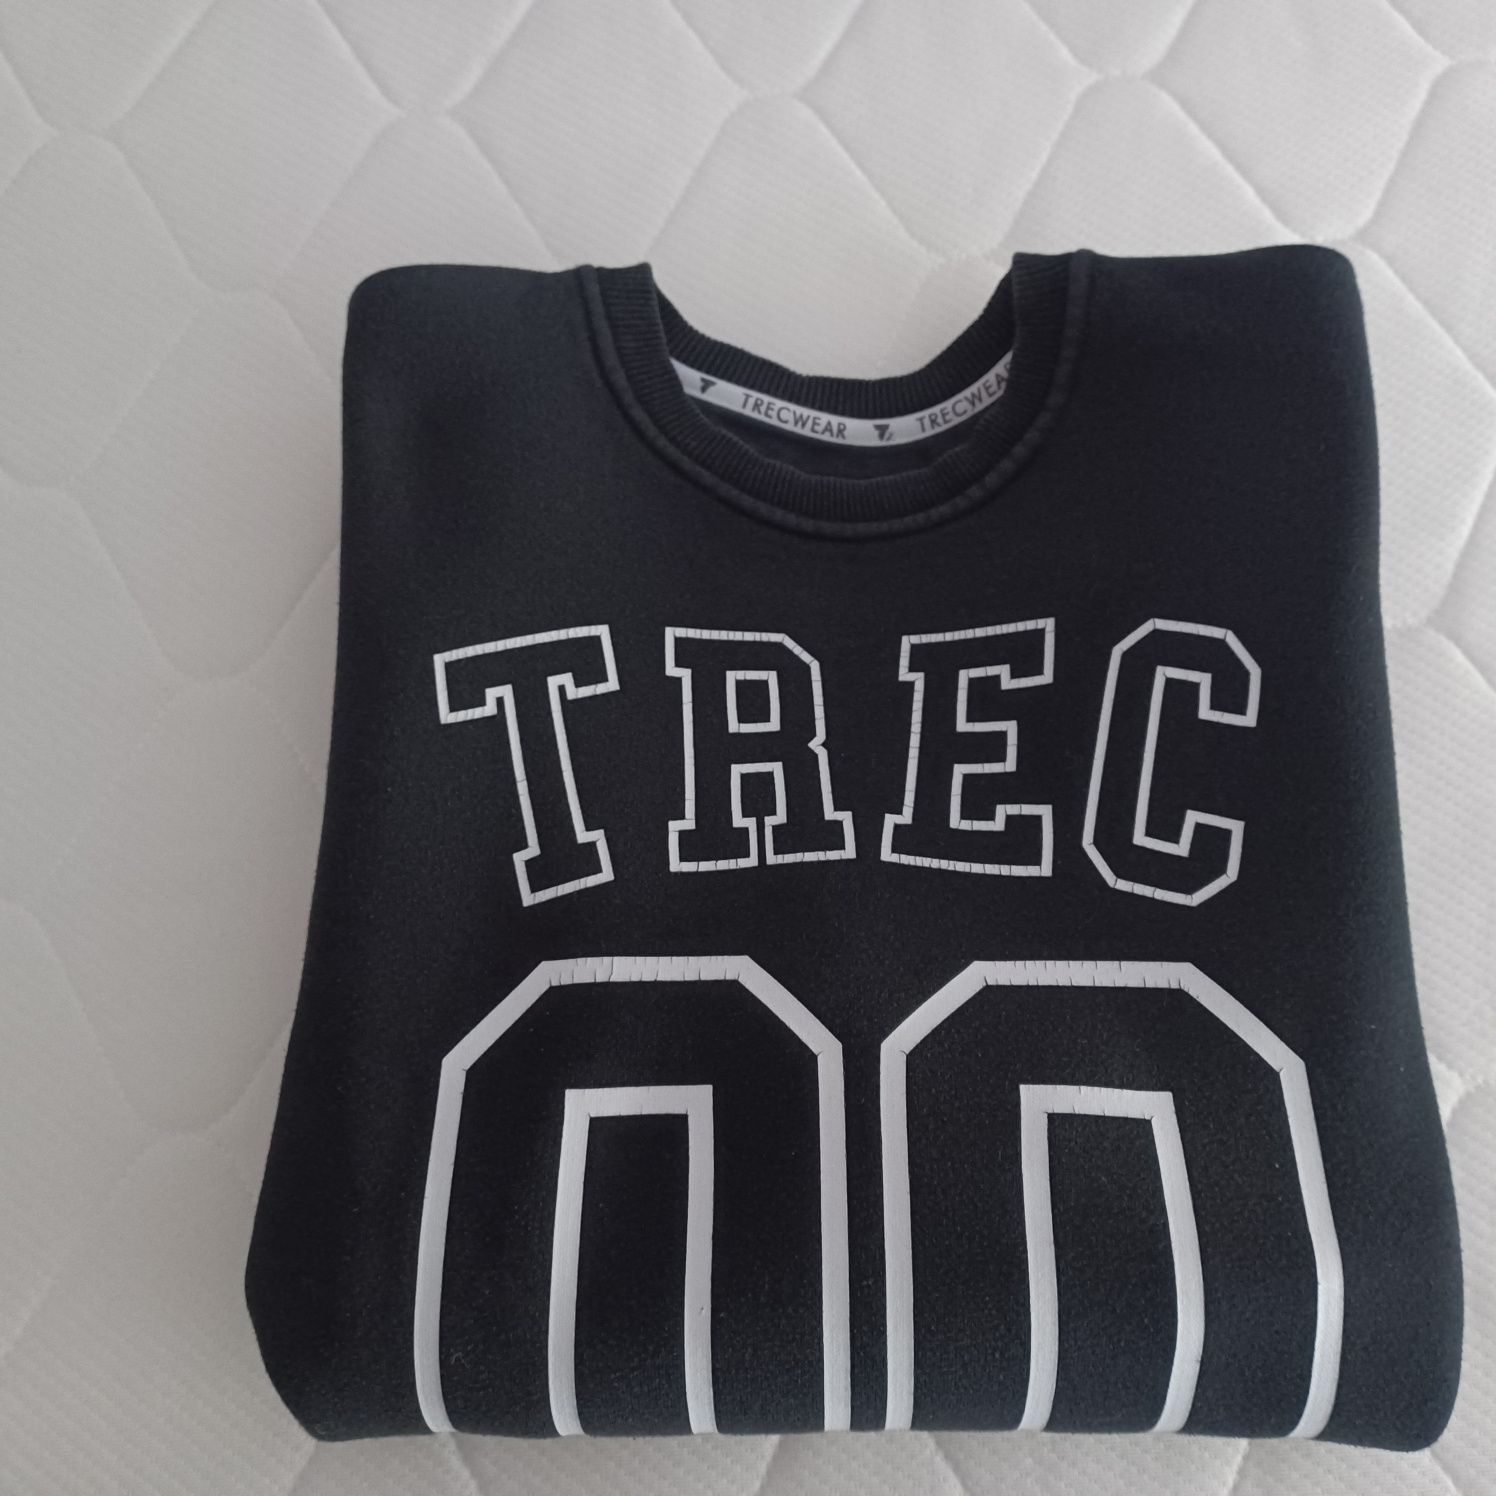 Bluza męska TREC Wear - S